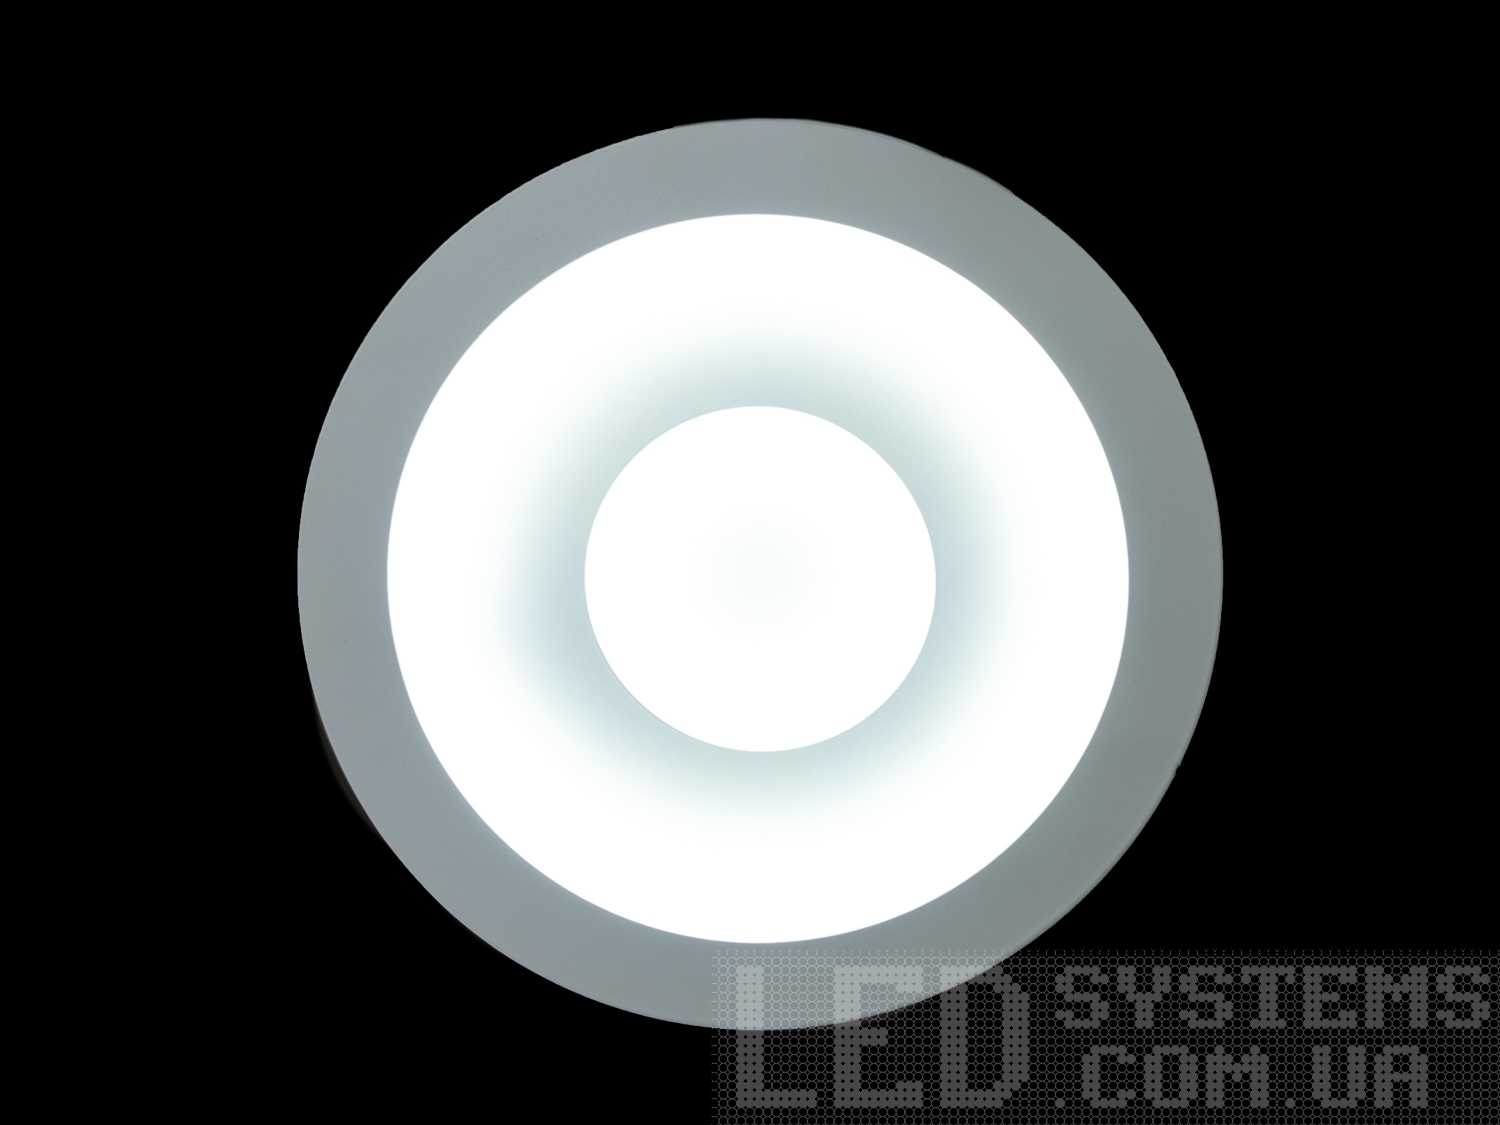 Світлодіодний світильник бра білого кольору круглої форми обрамляє LED лампи. Таке бра запросто підійде під будь-який інтер'єр - класичний, сучасний і навіть в стилі «хай-тек».
Витончені накладні світлодіодні світильники призначені для створення яскравого світлодіодного освітлення з регульованою колірною температурою від теплого білого до холодного білого.
Перемикання спектрів світіння світлодіодним панелі здійснюється простим вимиканням-включенням.
Світлодіодний світильник дозволяє вибирати режим освітлення від часу доби і виконуваних під його світлом завдань.